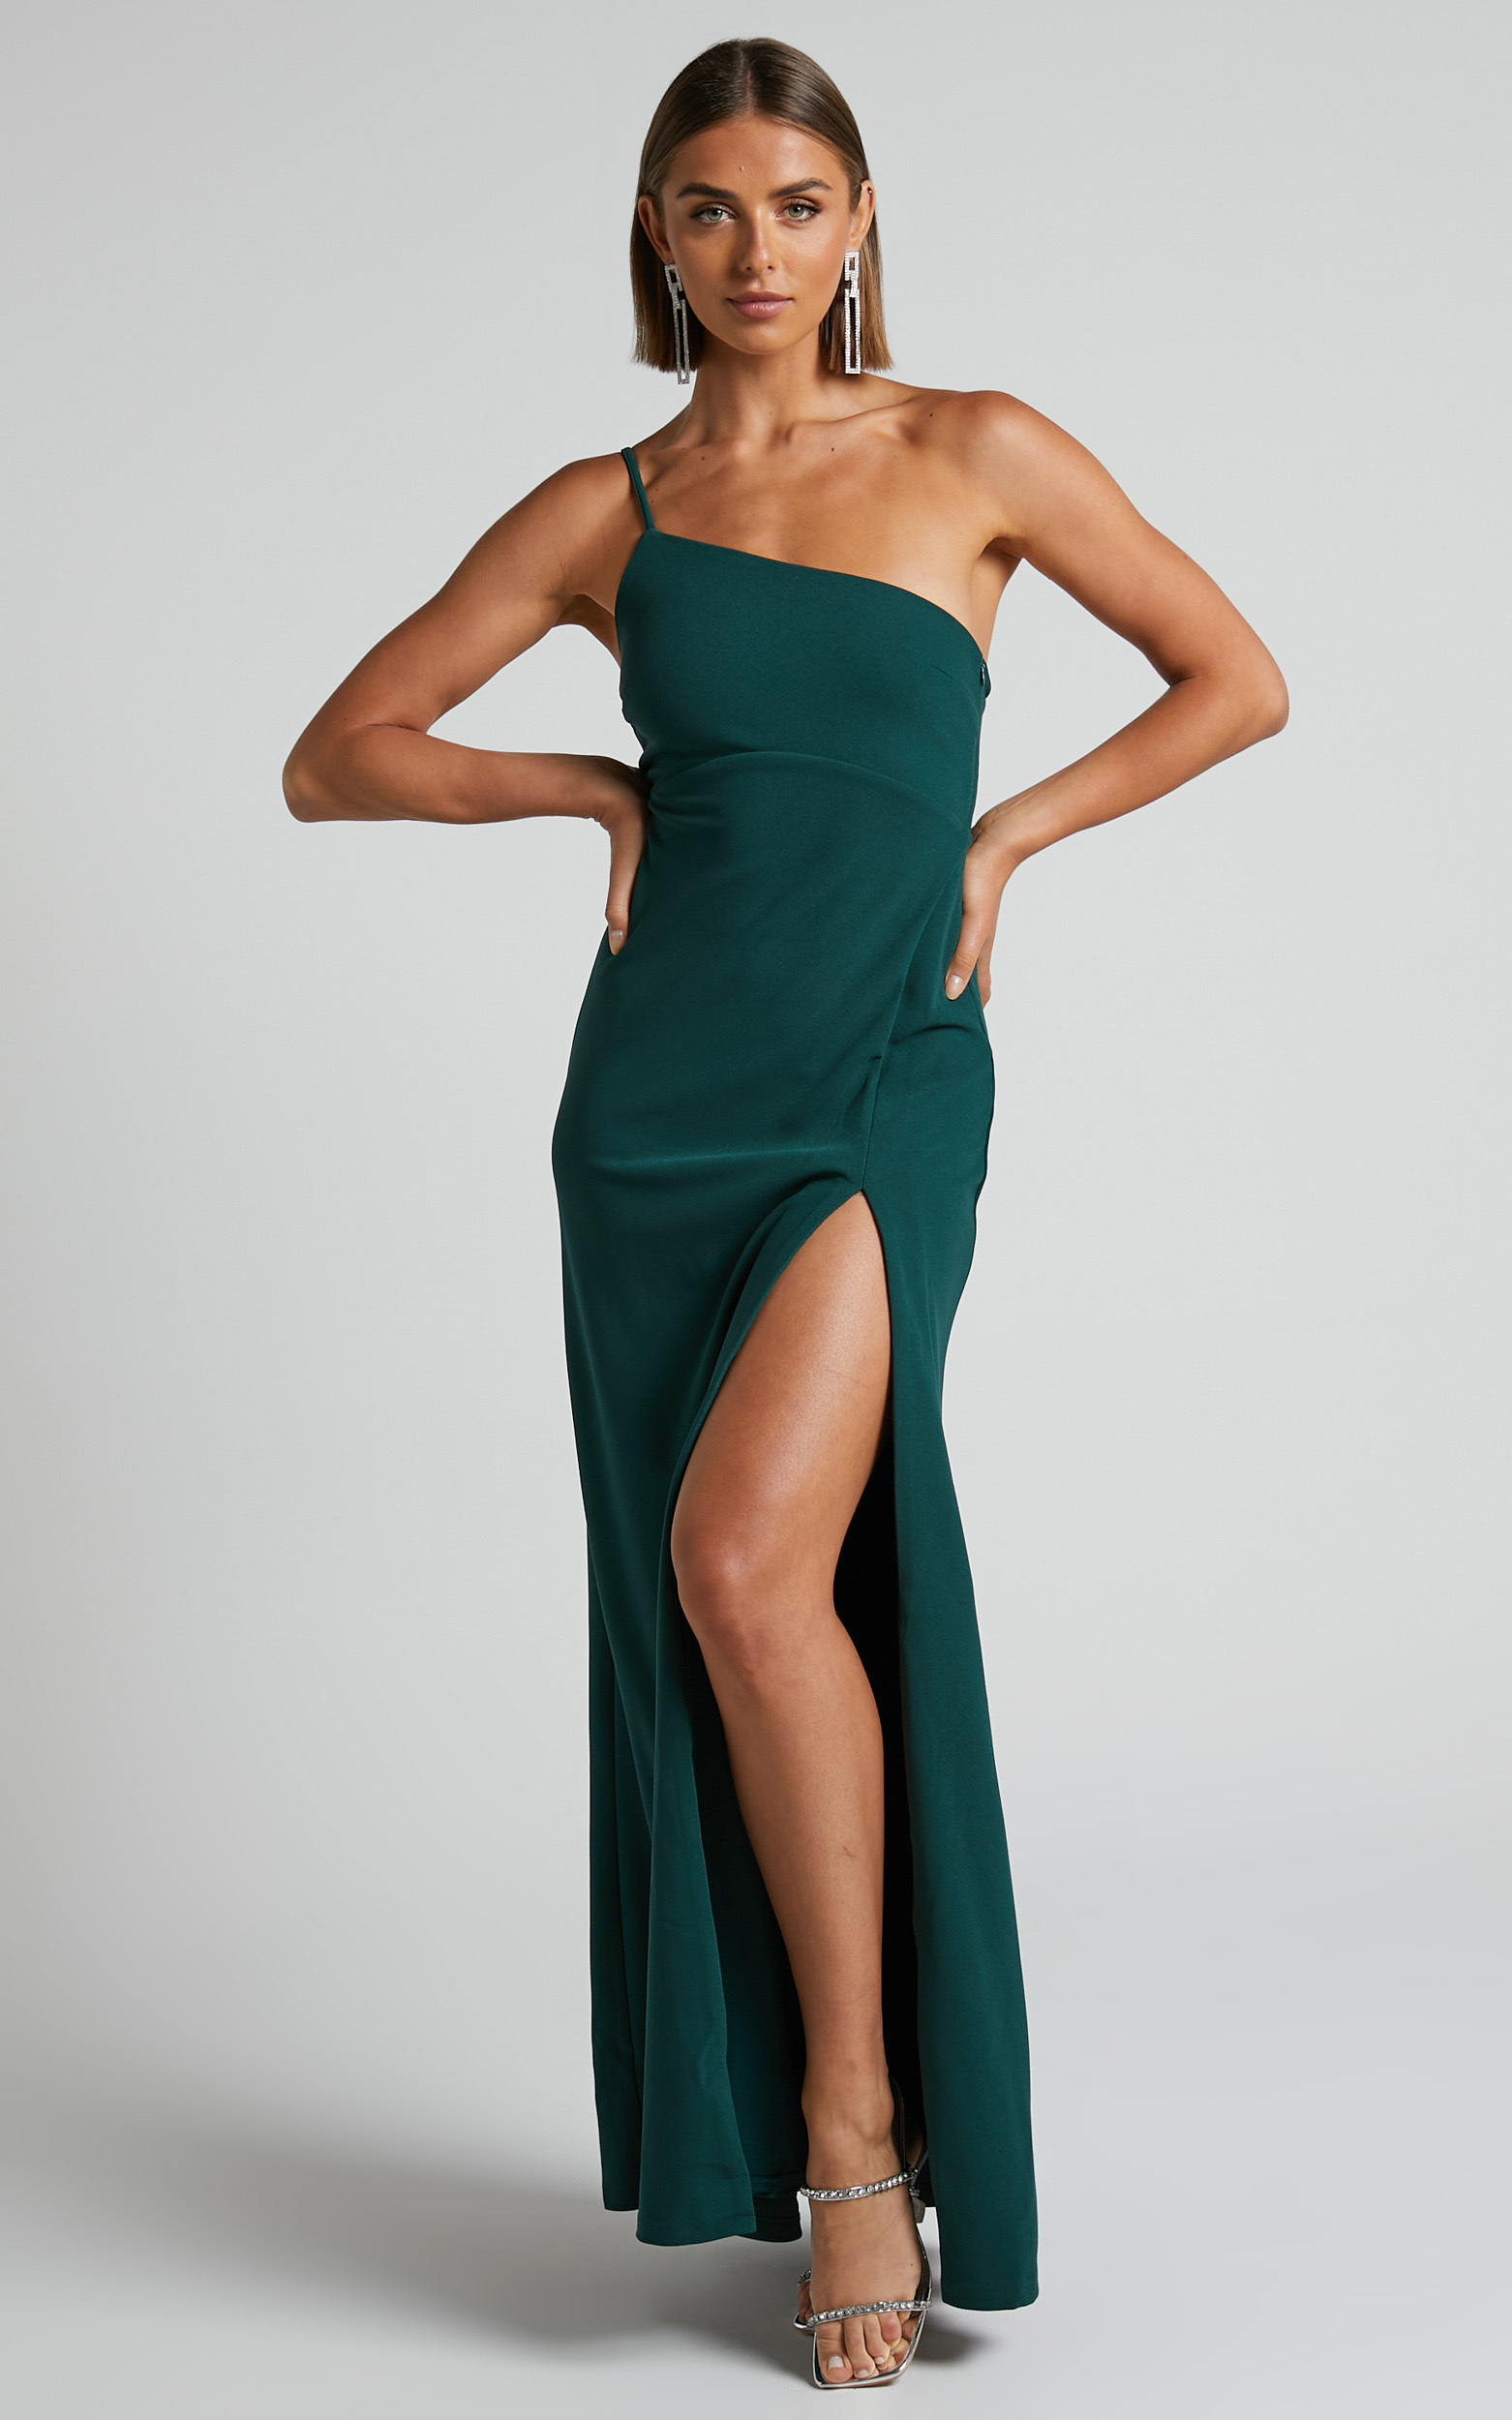 Magnaye Maxi Dress - One Shoulder Thigh Split Dress in Emerald - 06, GRN1, hi-res image number null